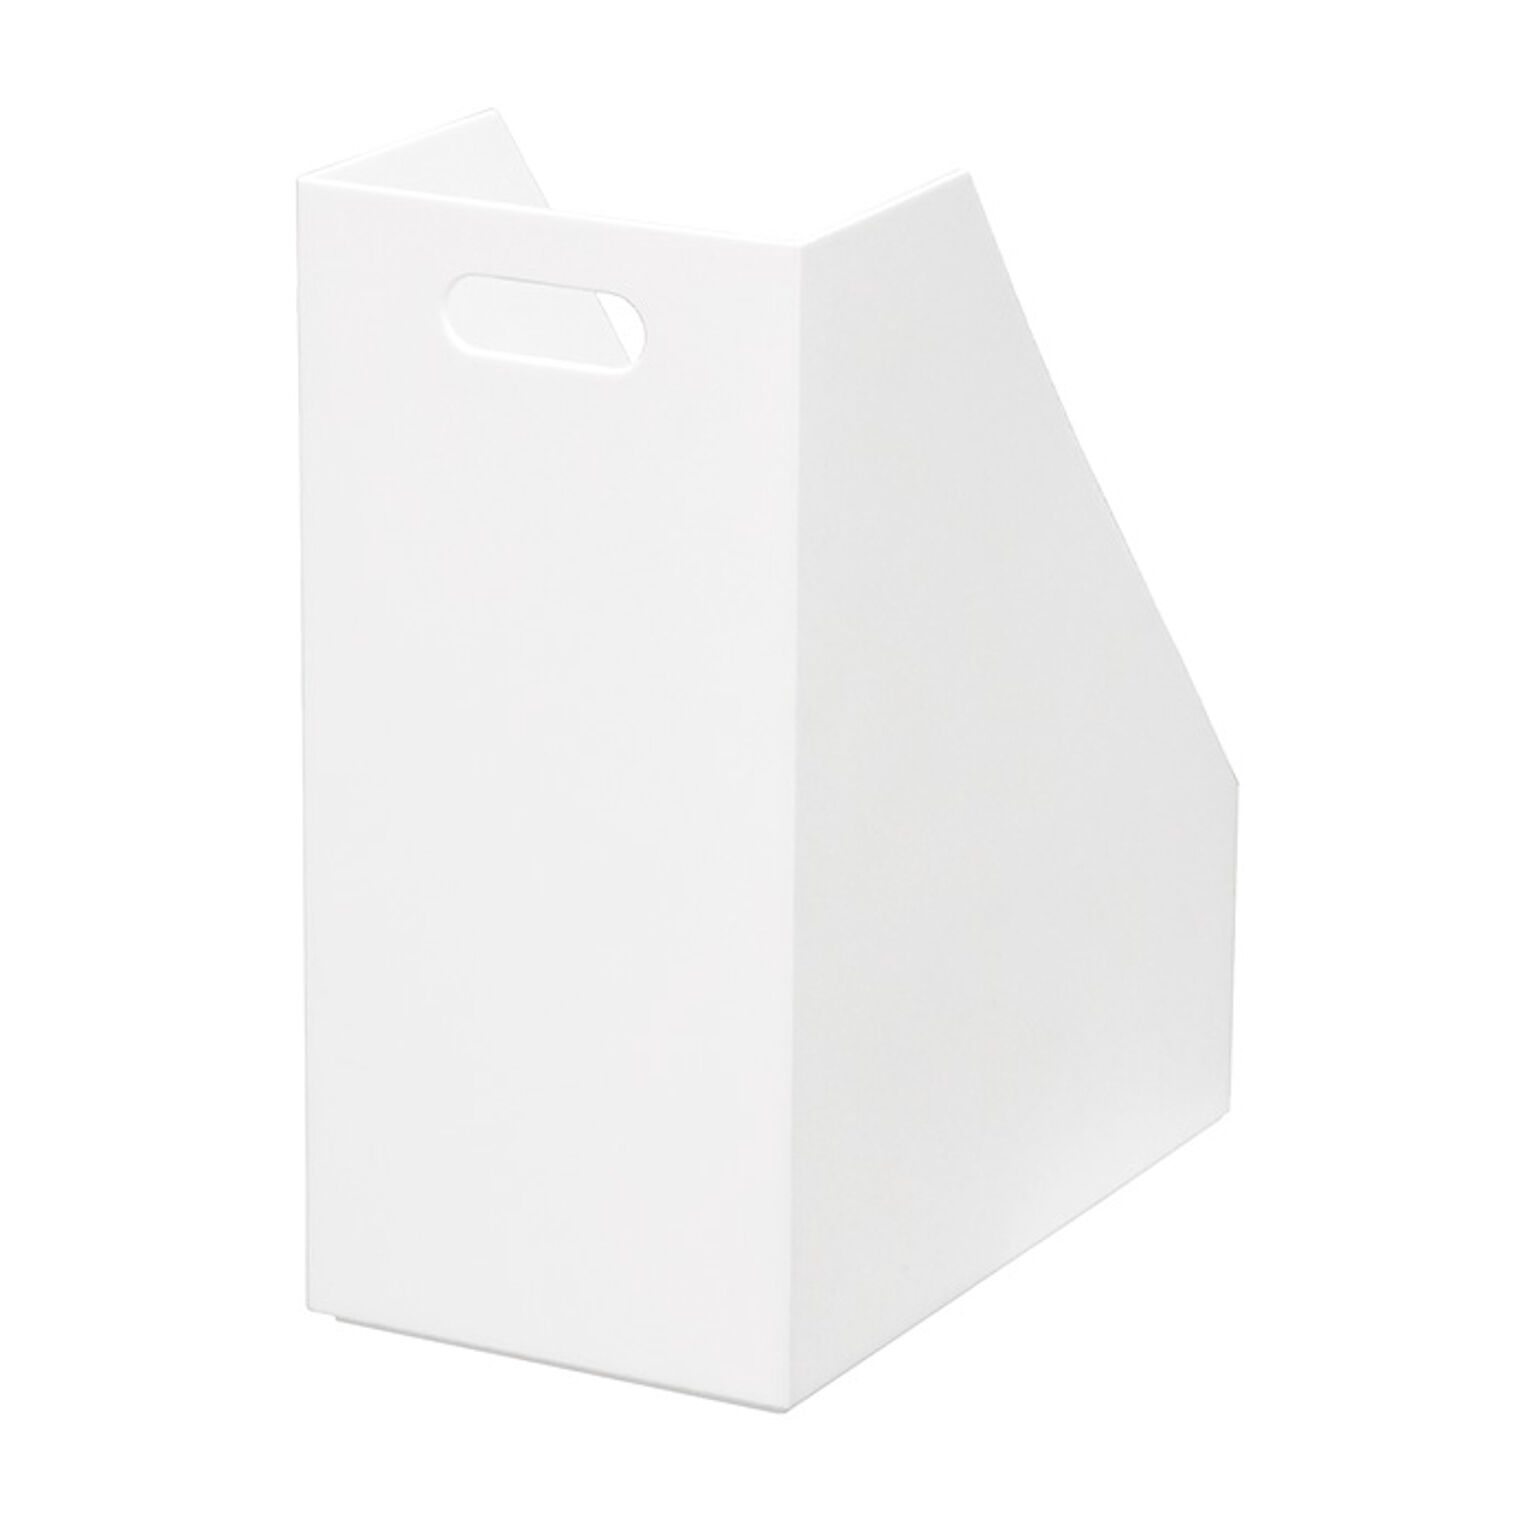 ファイルケース ワイドケース ストレーショナリー A4 ボックスファイル ファイルボックス